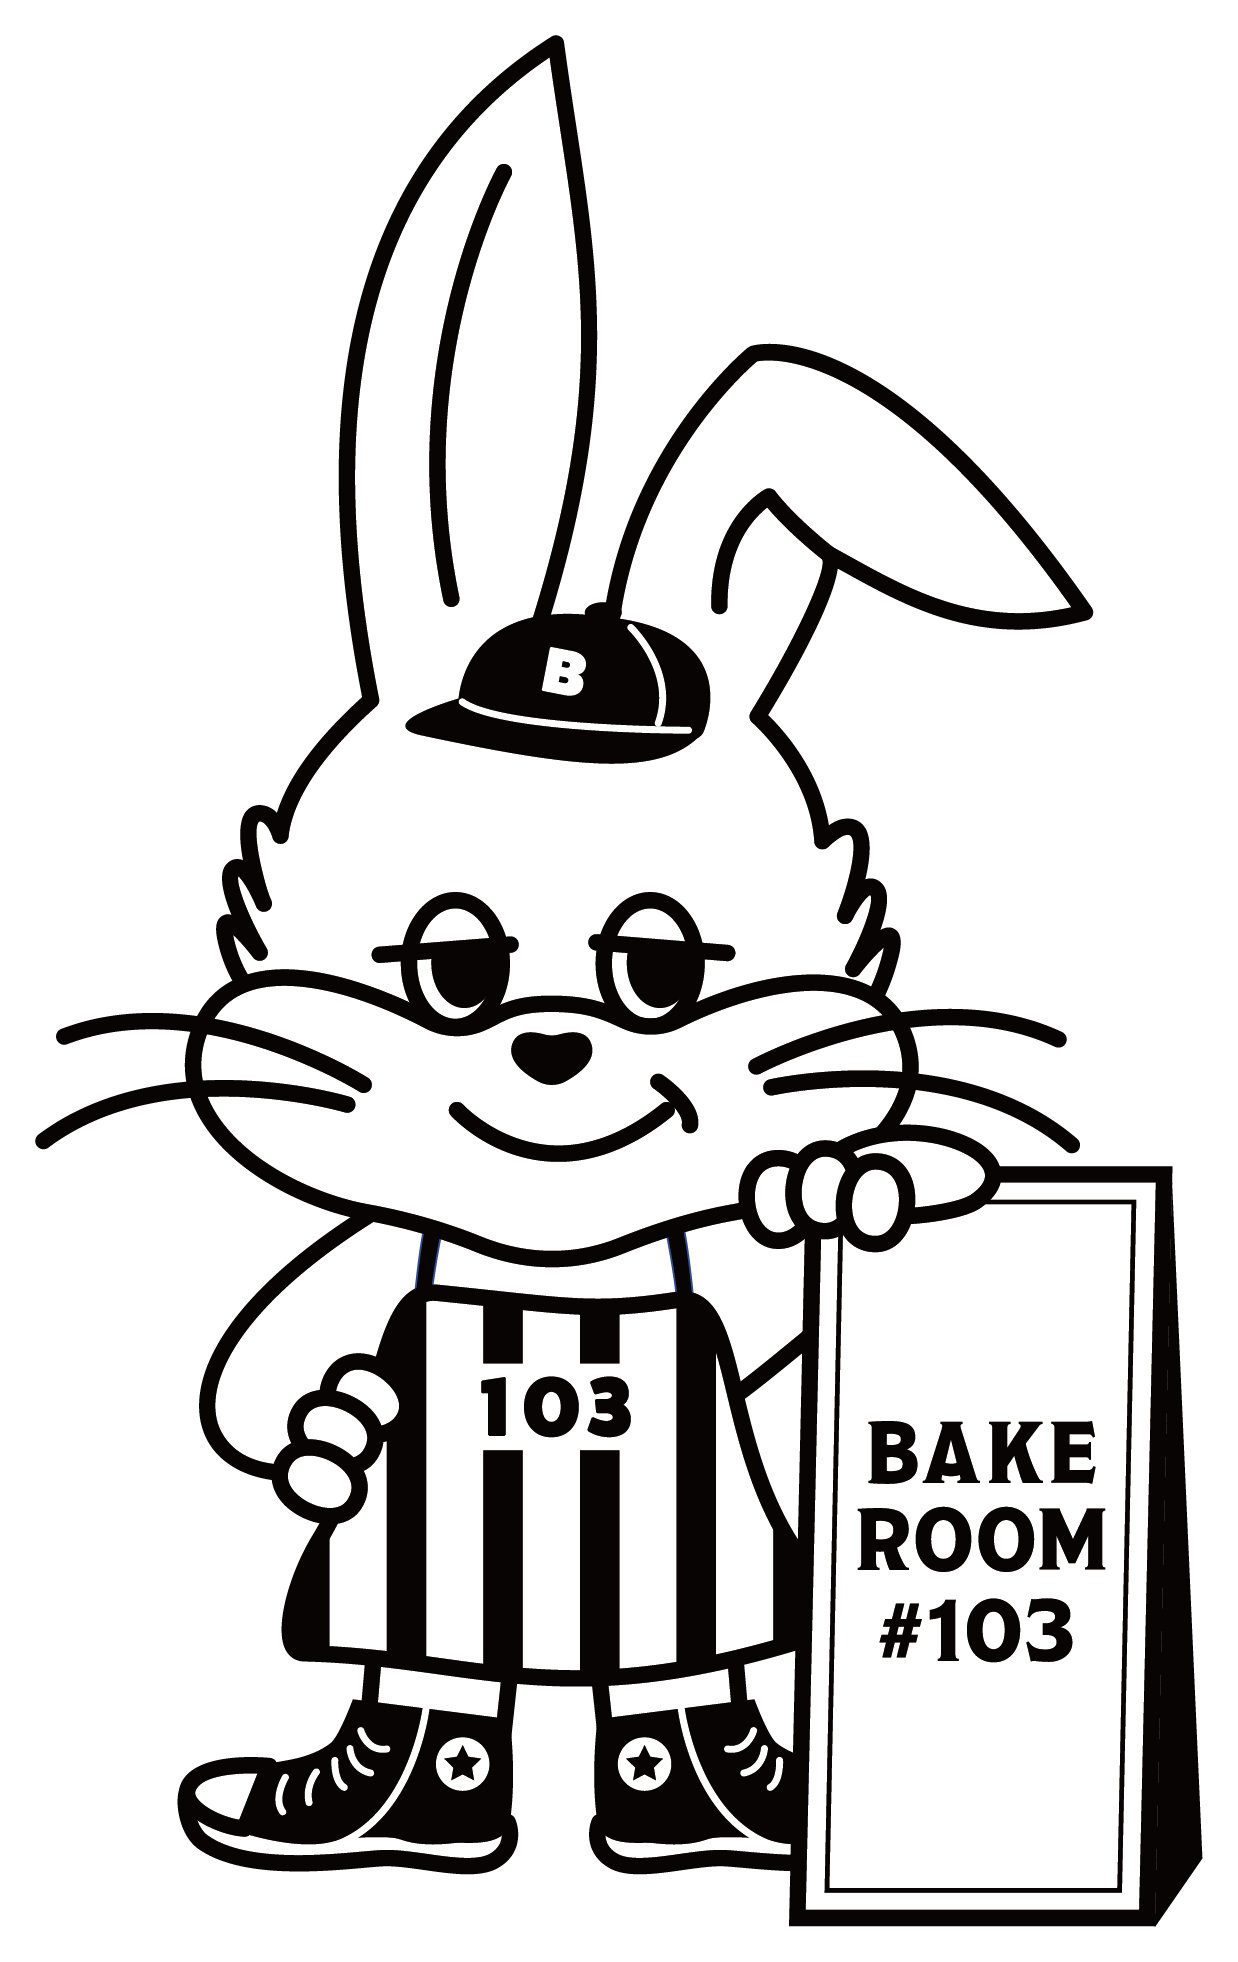 BAKE ROOM #103 